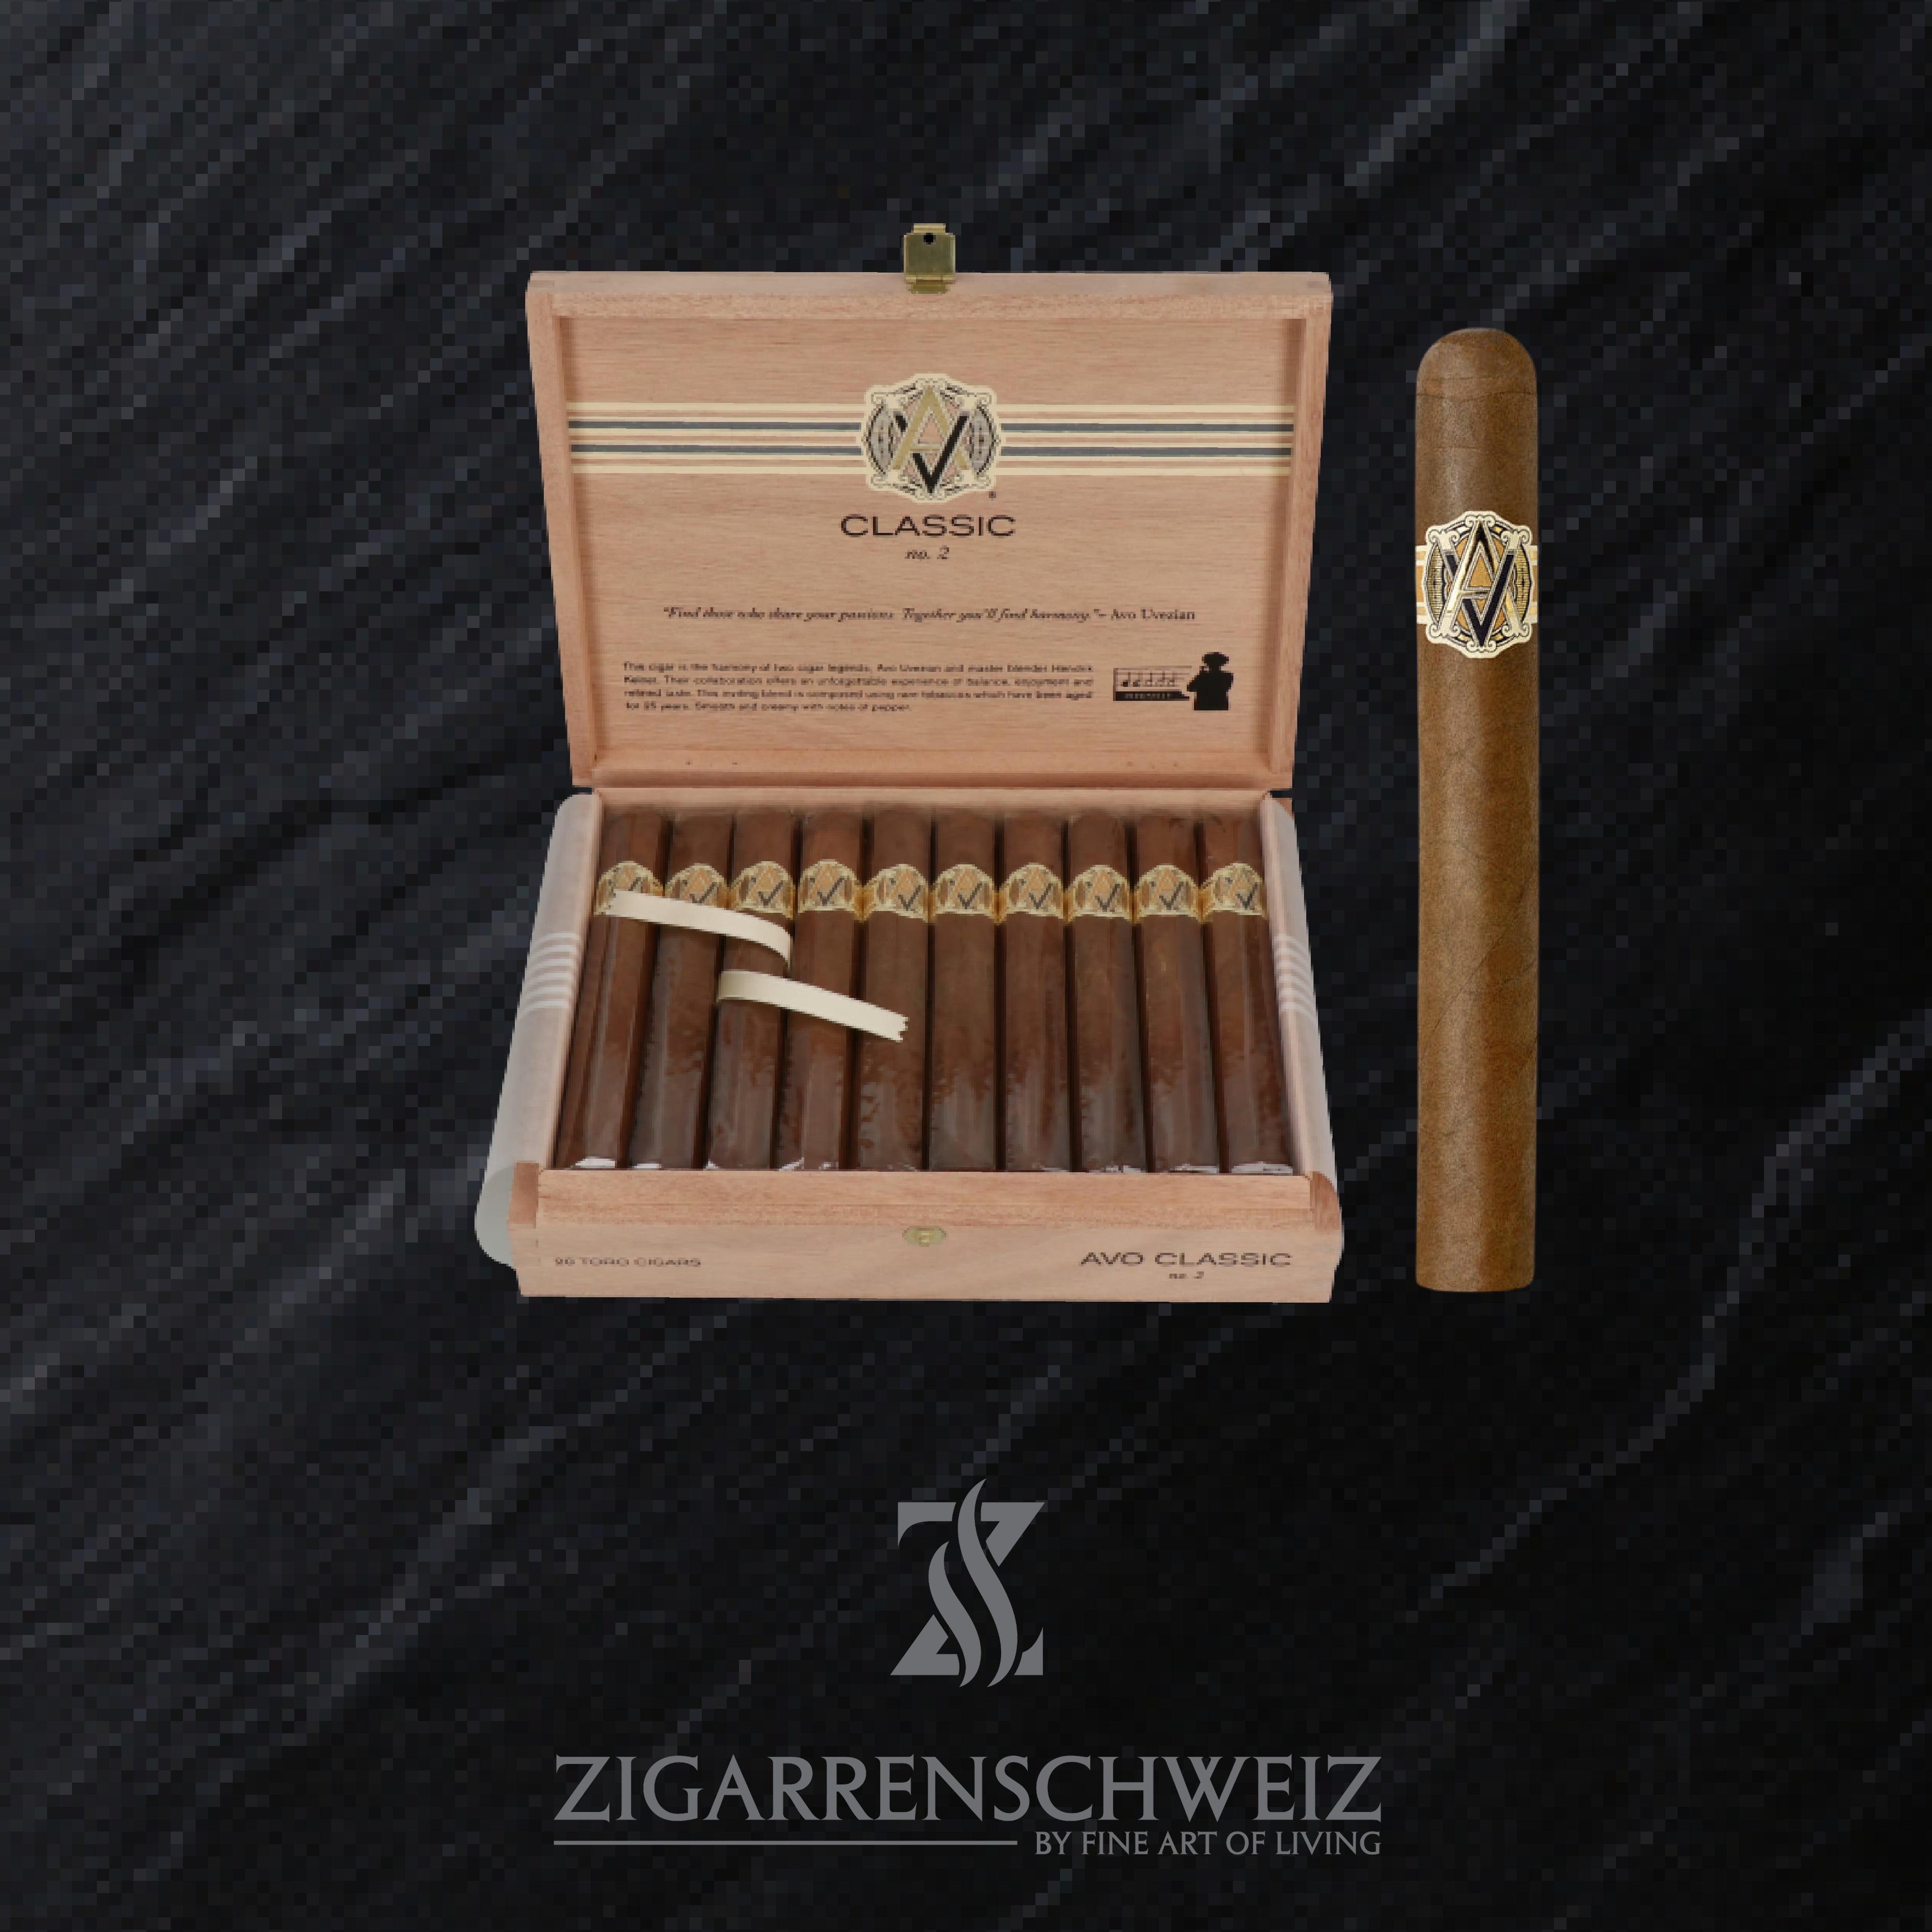 AVO Classic No. 2 Toro Zigarren Kiste geöffnet